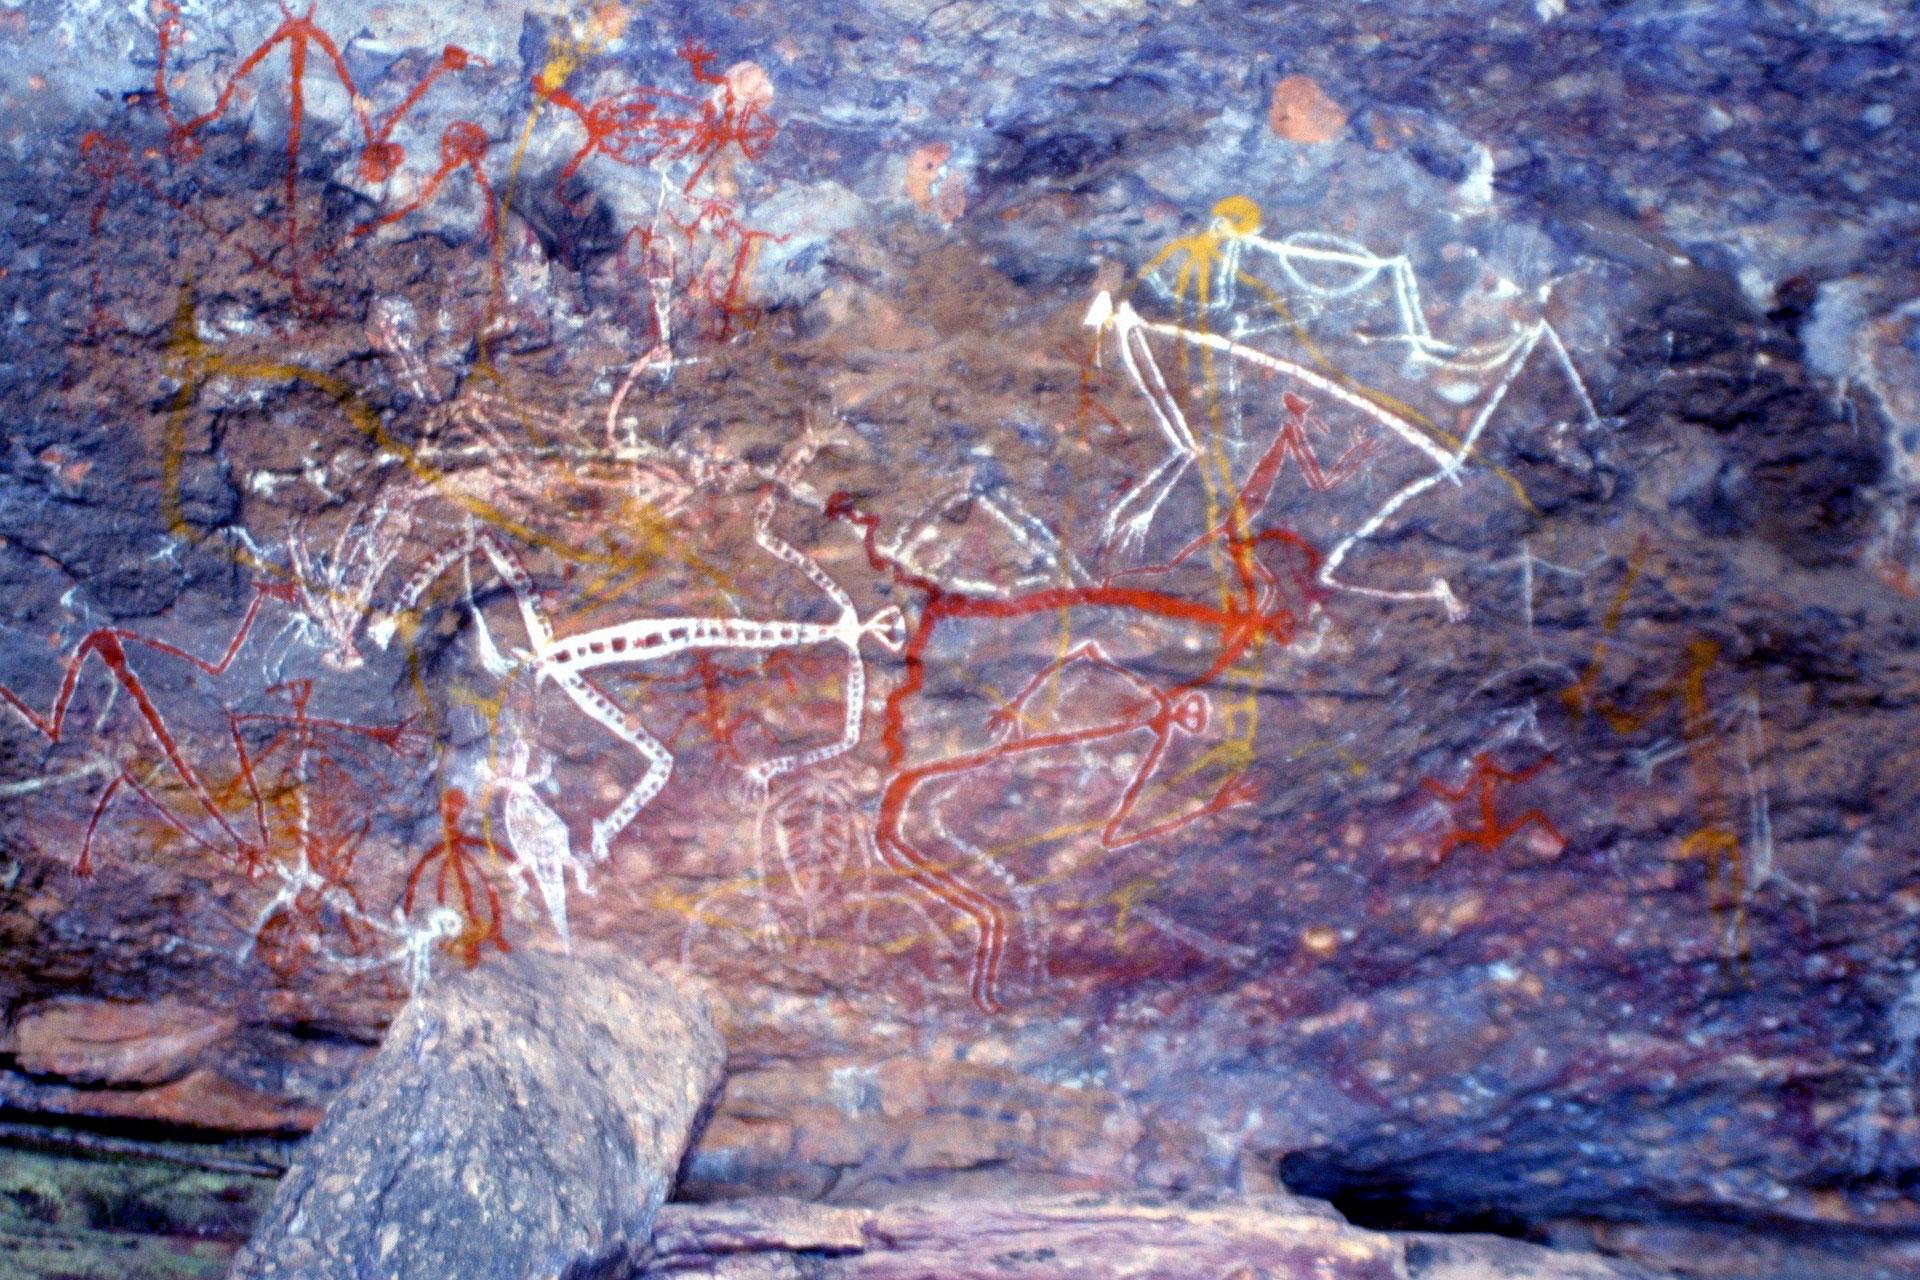 Aboriginal rock painting graphic - links to spirituality page